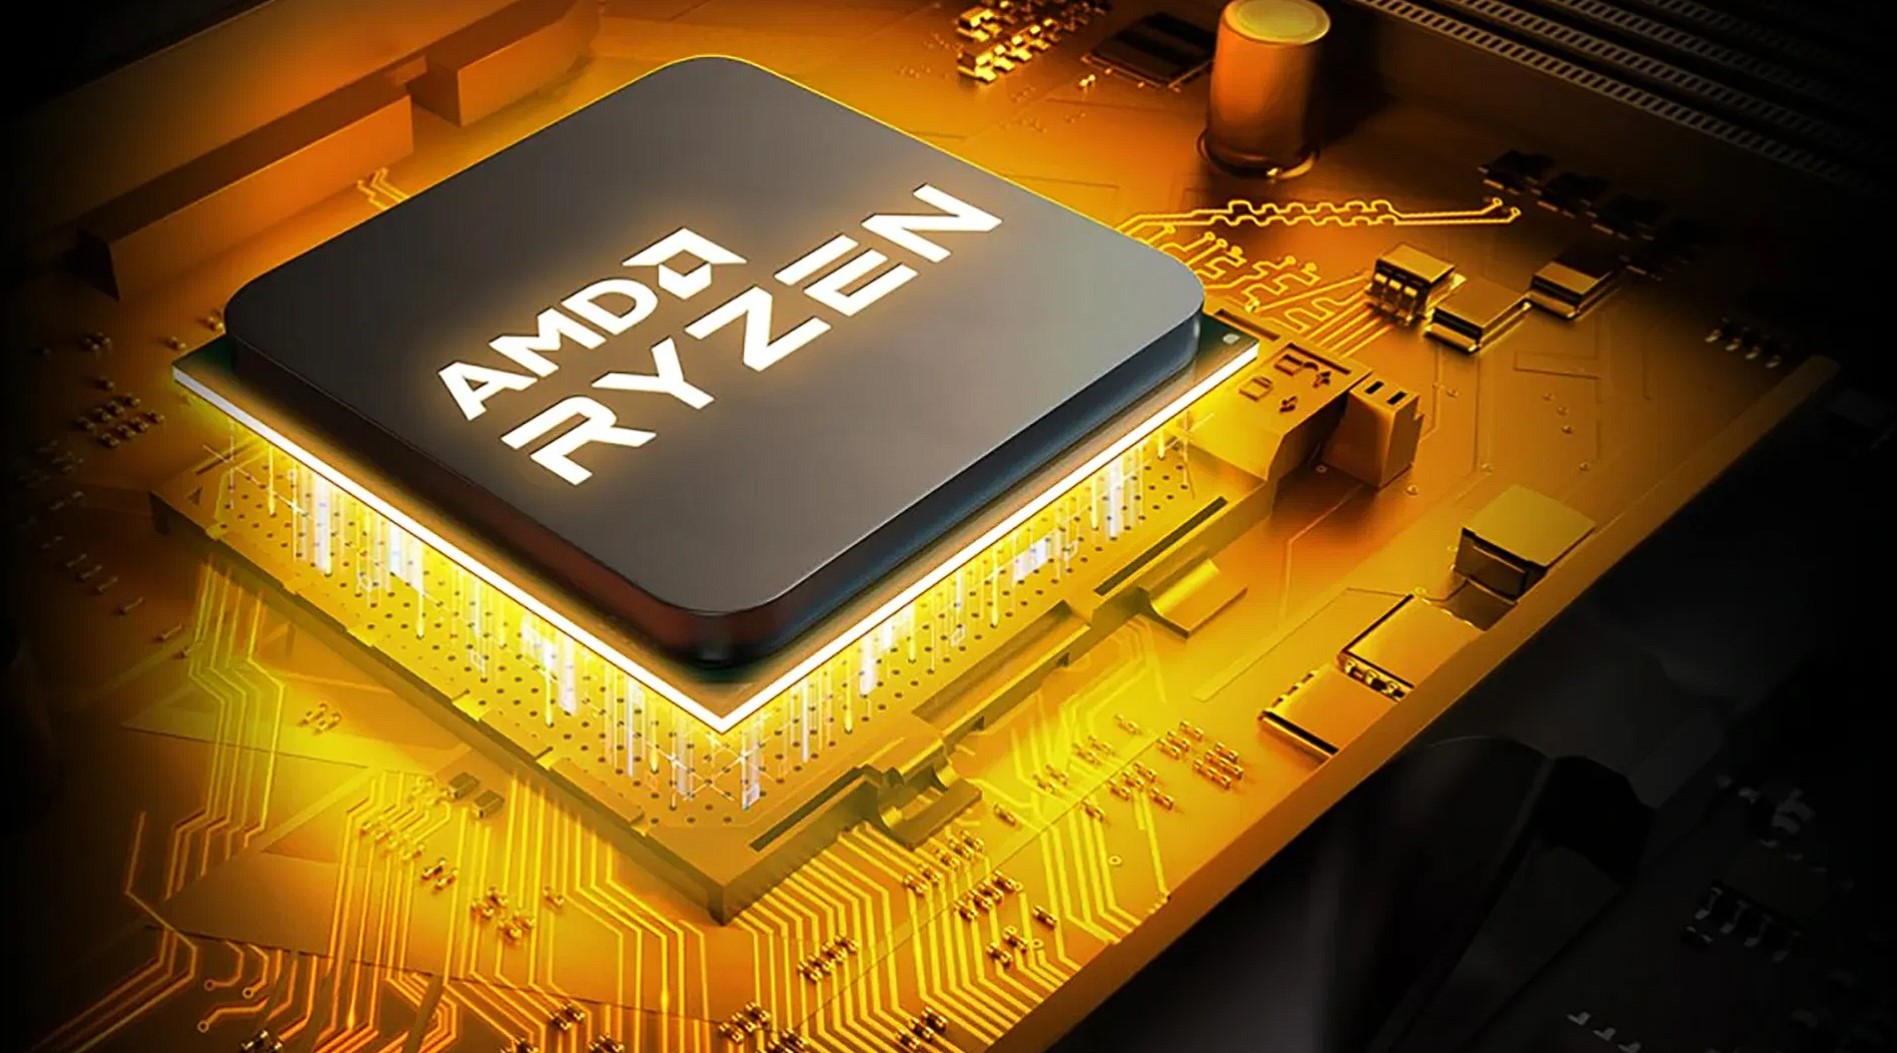 AMD Ryzen_1